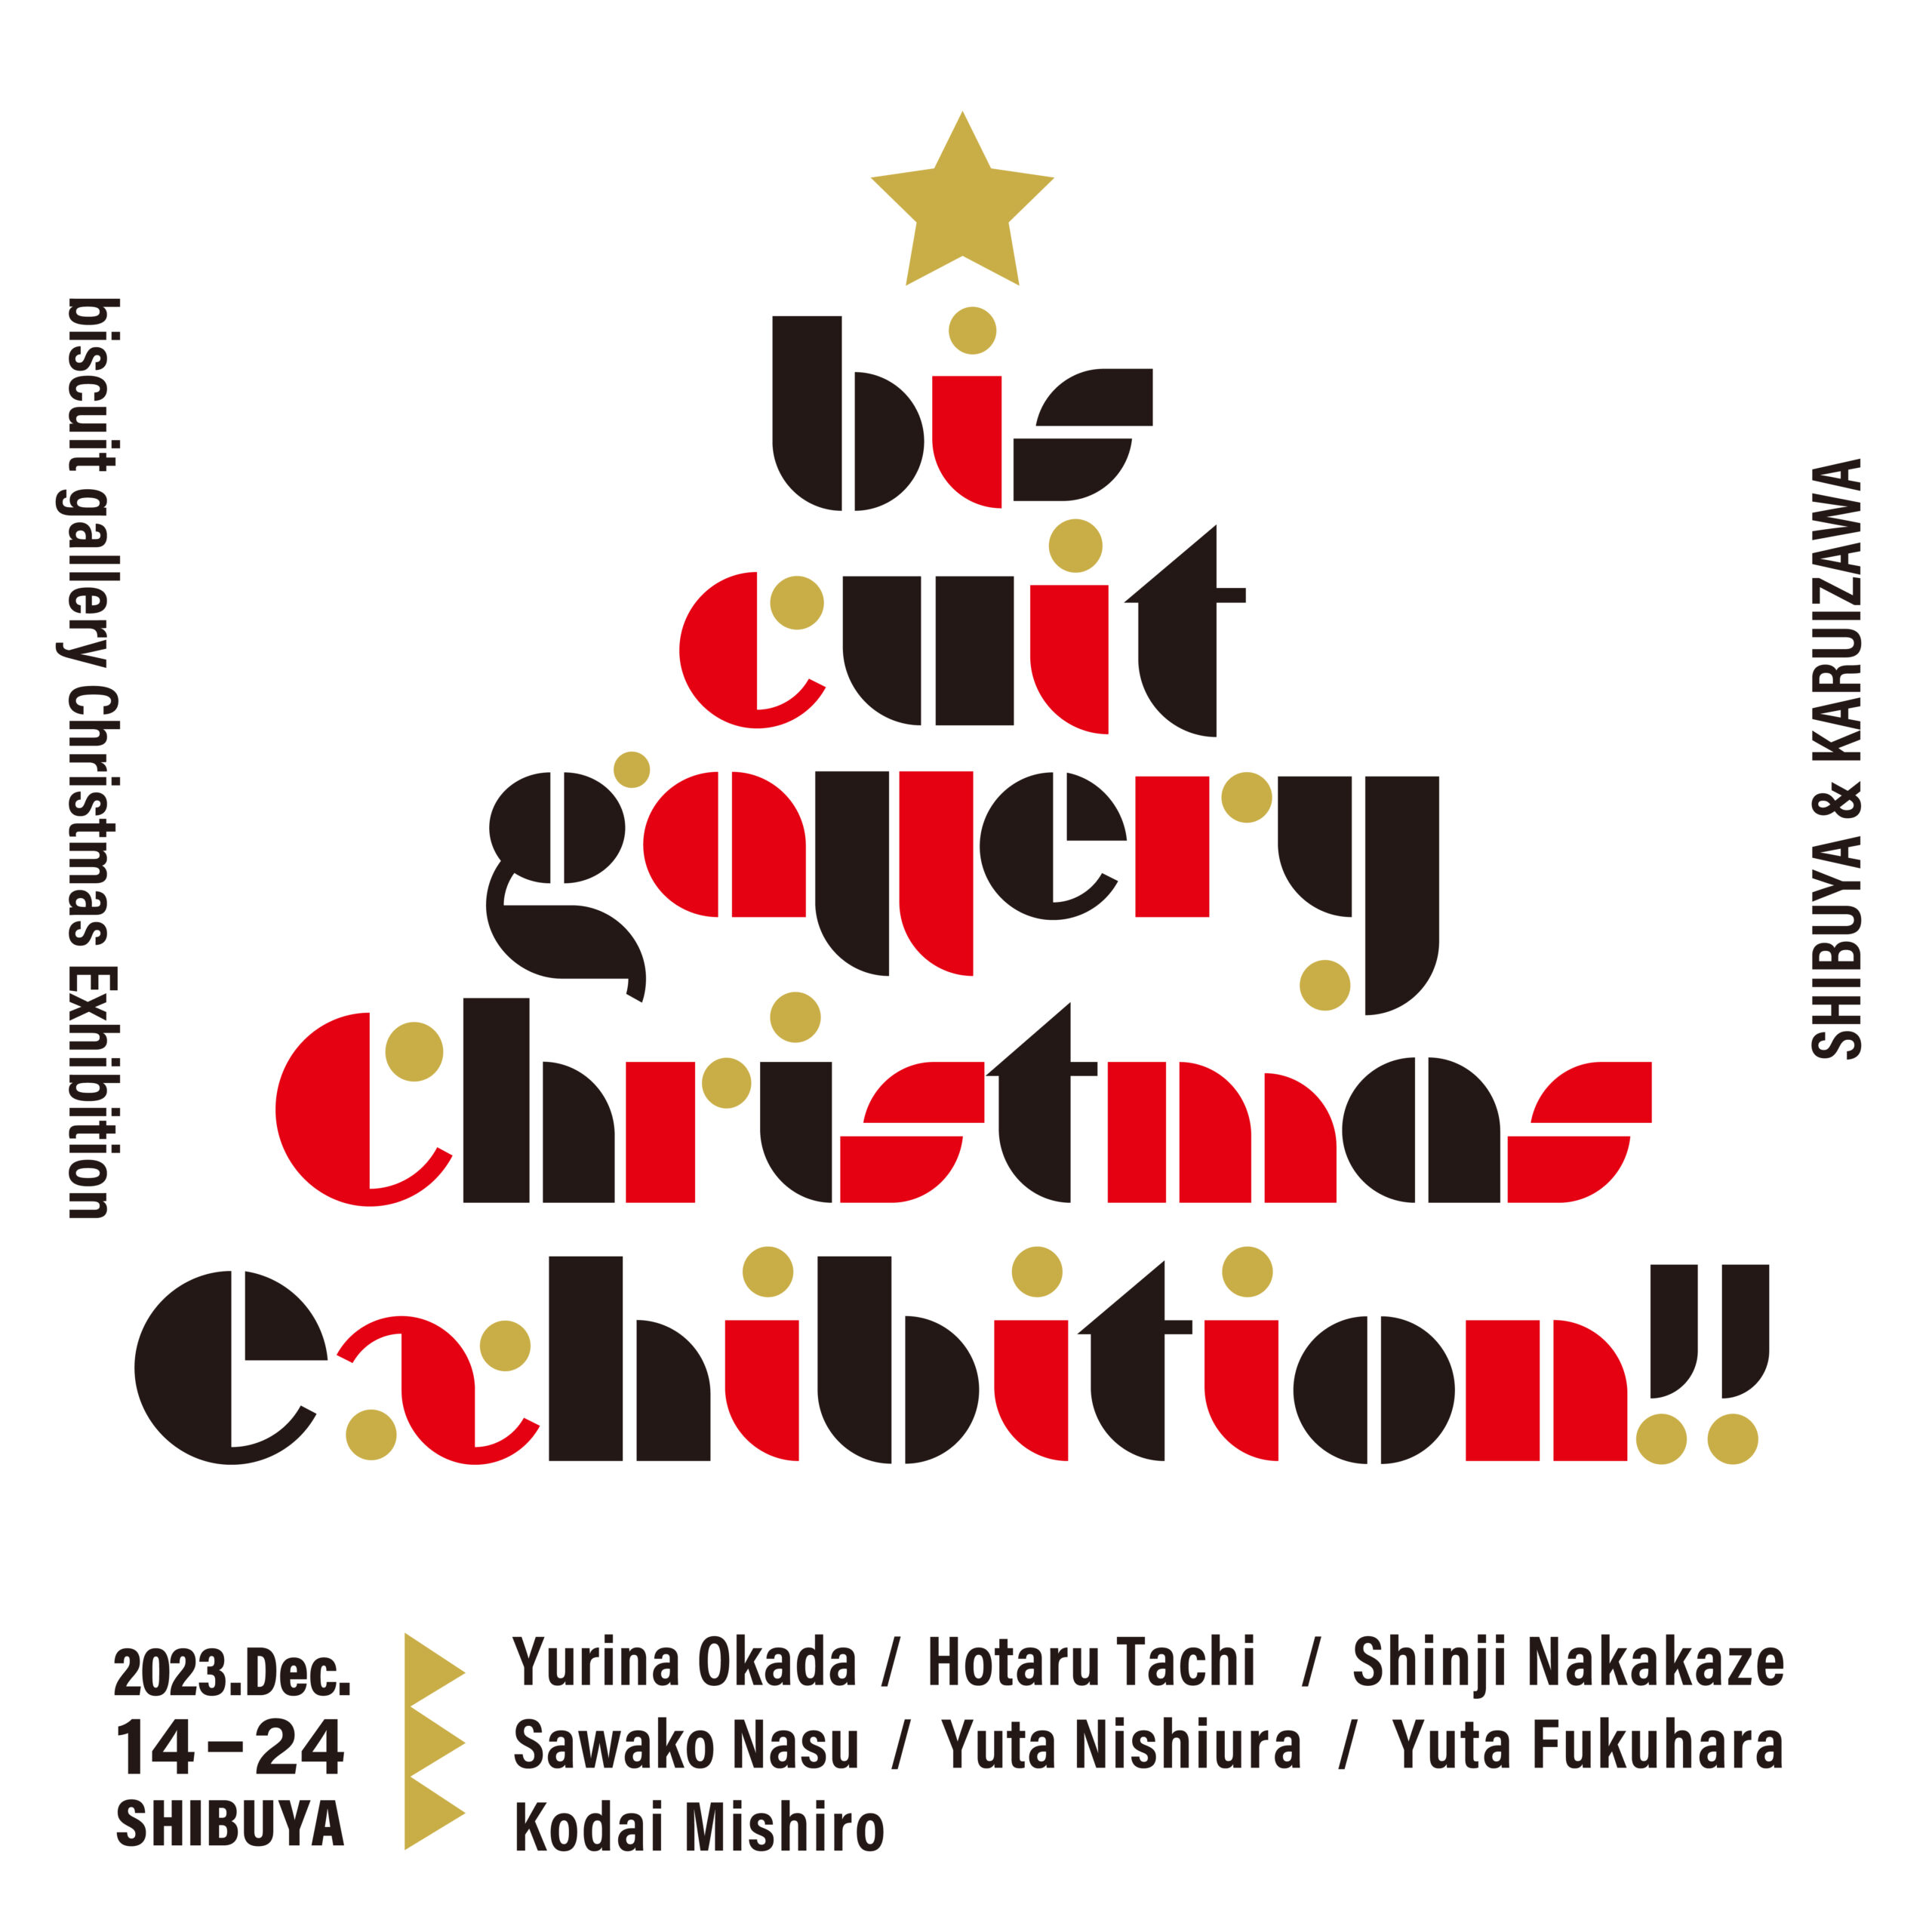 グループ展「biscuit gallery Christmas exhibition」/ Group show “biscuit gallery Christmas exhibition”